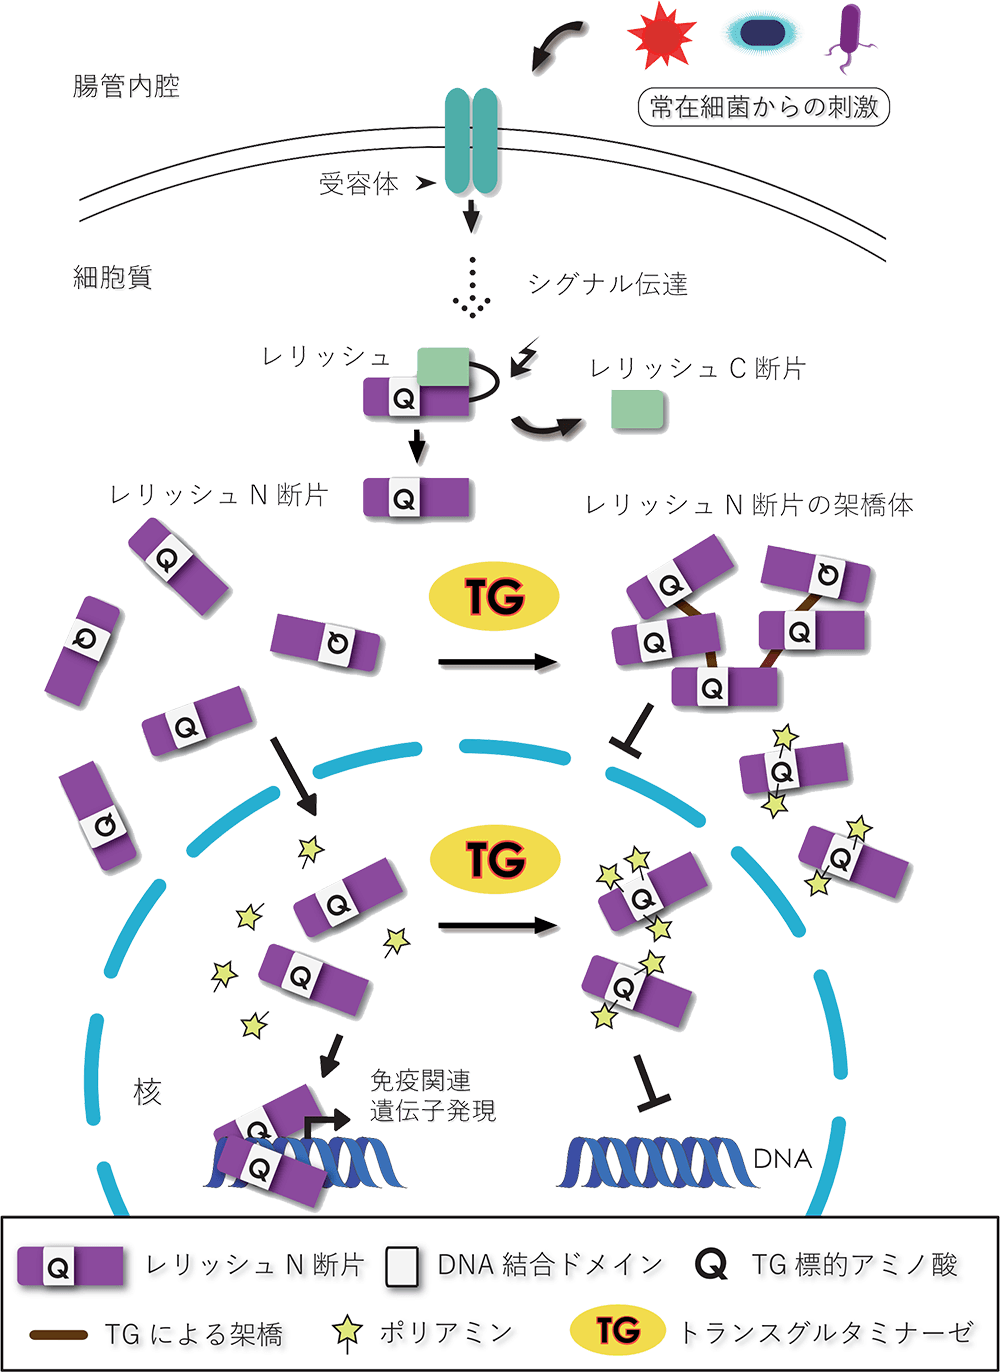 <dfn class="fig">図3</dfn>：<span class="qrinews-figure-title">腸管におけるショウジョウバエ免疫応答のTGを介した調節機構</span>　腸管においては常在細菌からの刺激により、常に免疫応答が引き起こされる。細胞外からのシグナル伝達により、細胞質内でレリッシュはタンパク質分解酵素によって切断され、N断片とC断片になる。そのうちN断片はこれまで通れなかった核膜を通って核内へ移行し、転写因子としてはたらく。<abbr title="トランスグルタミナーゼ">TG</abbr>はレリッシュN断片同士もしくはポリアミンを架橋することで、核内への移行やDNA結合を阻害し、免疫関連遺伝子の過剰な発現を抑制していると考えられる。